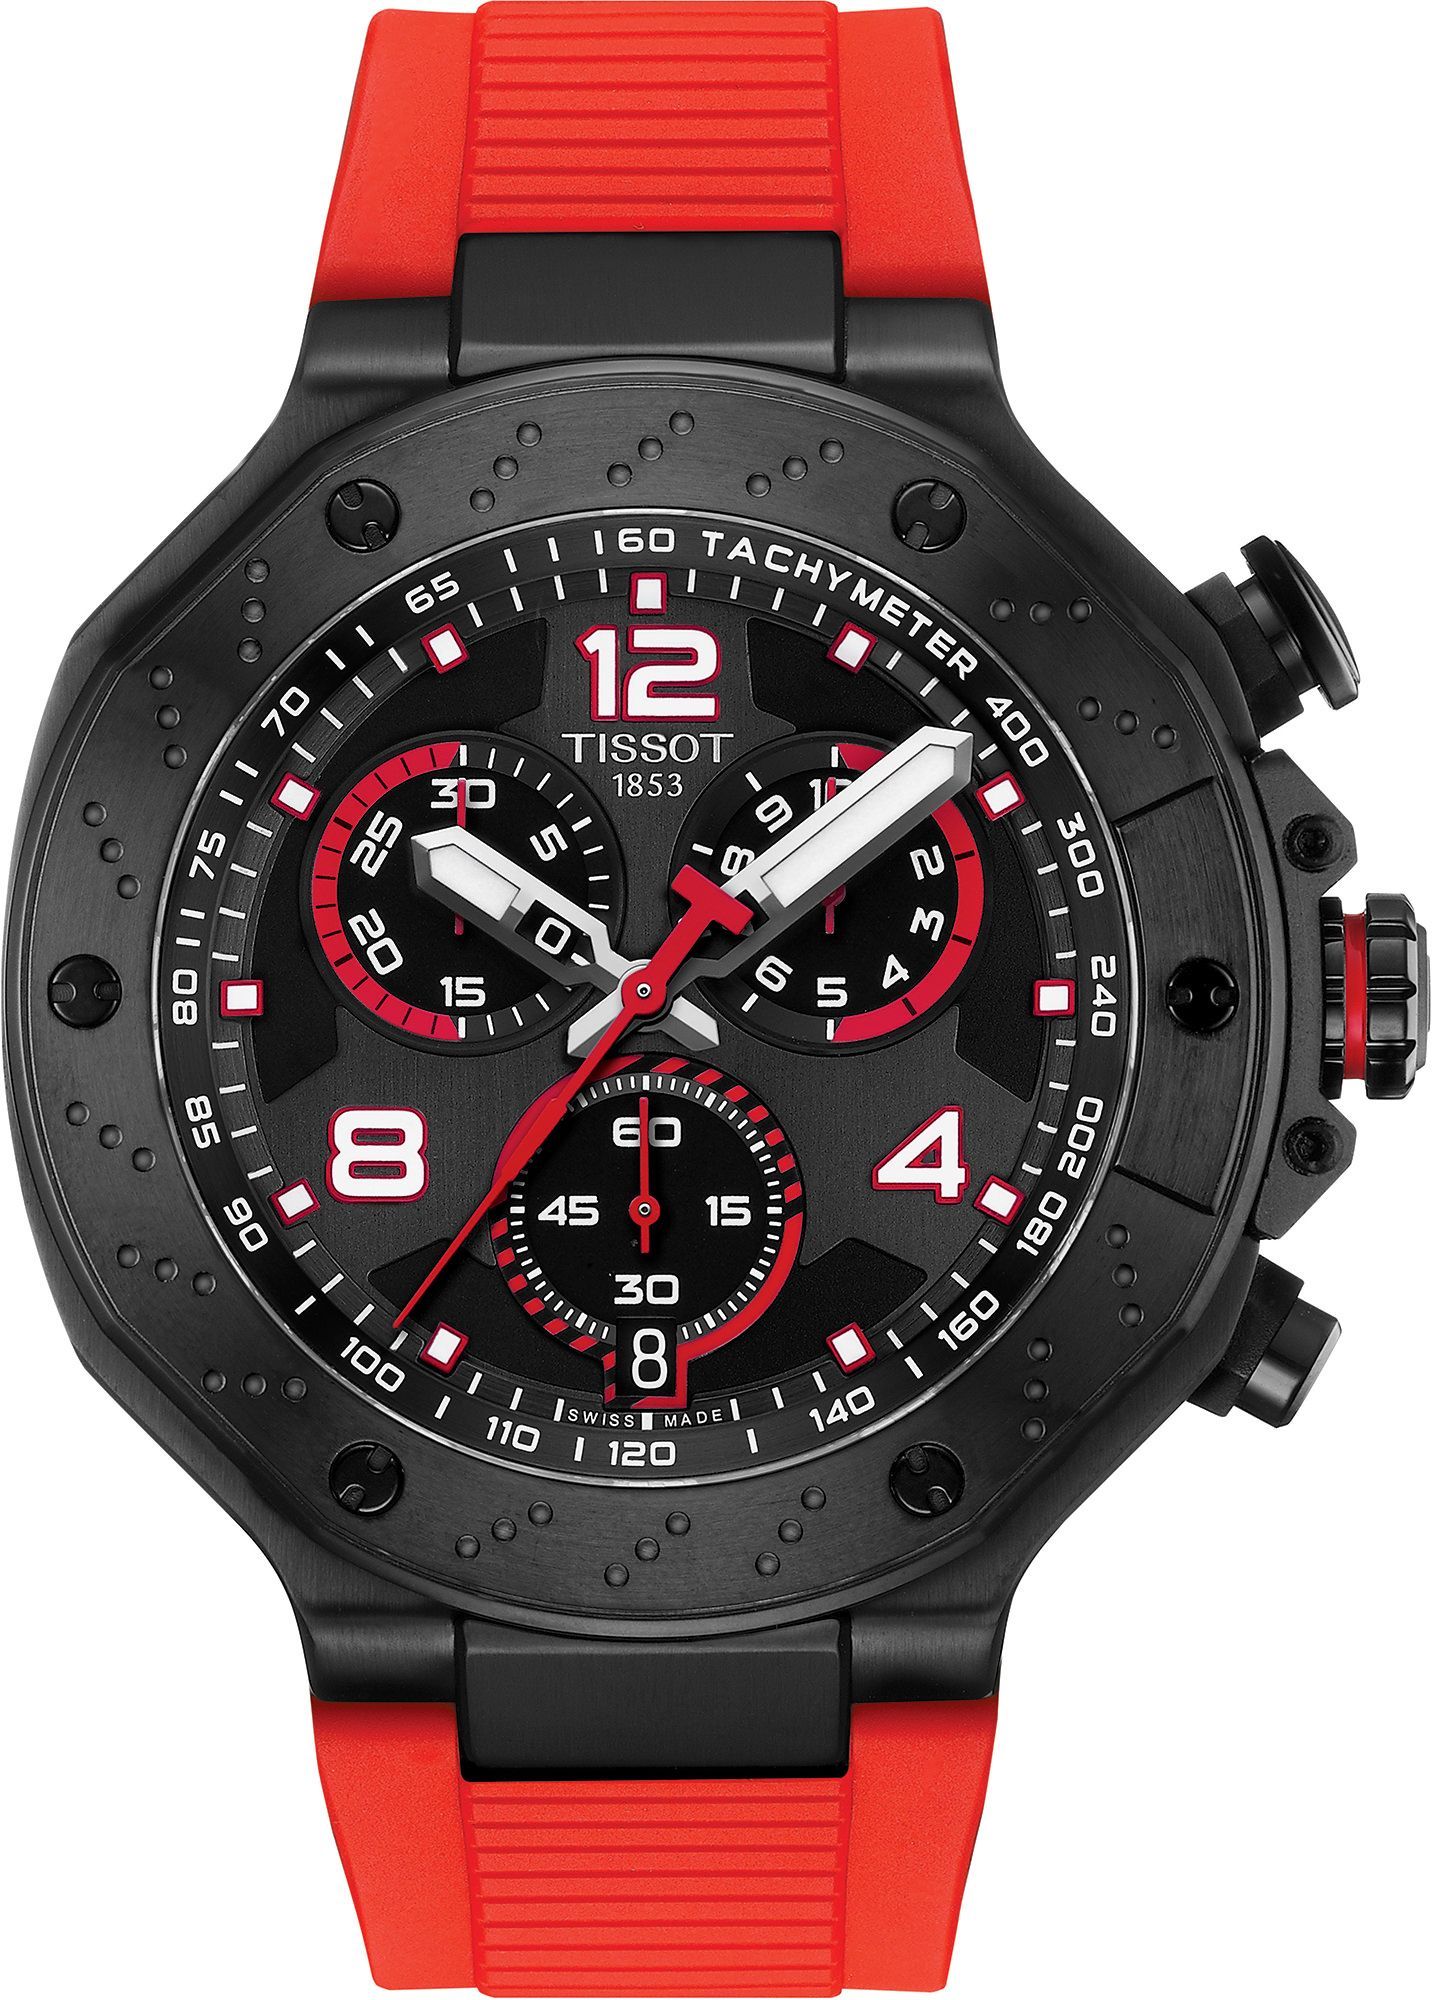 Tissot T-Sport Tissot T-Race MOTOGP Black Dial 45 mm Quartz Watch For Men - 1